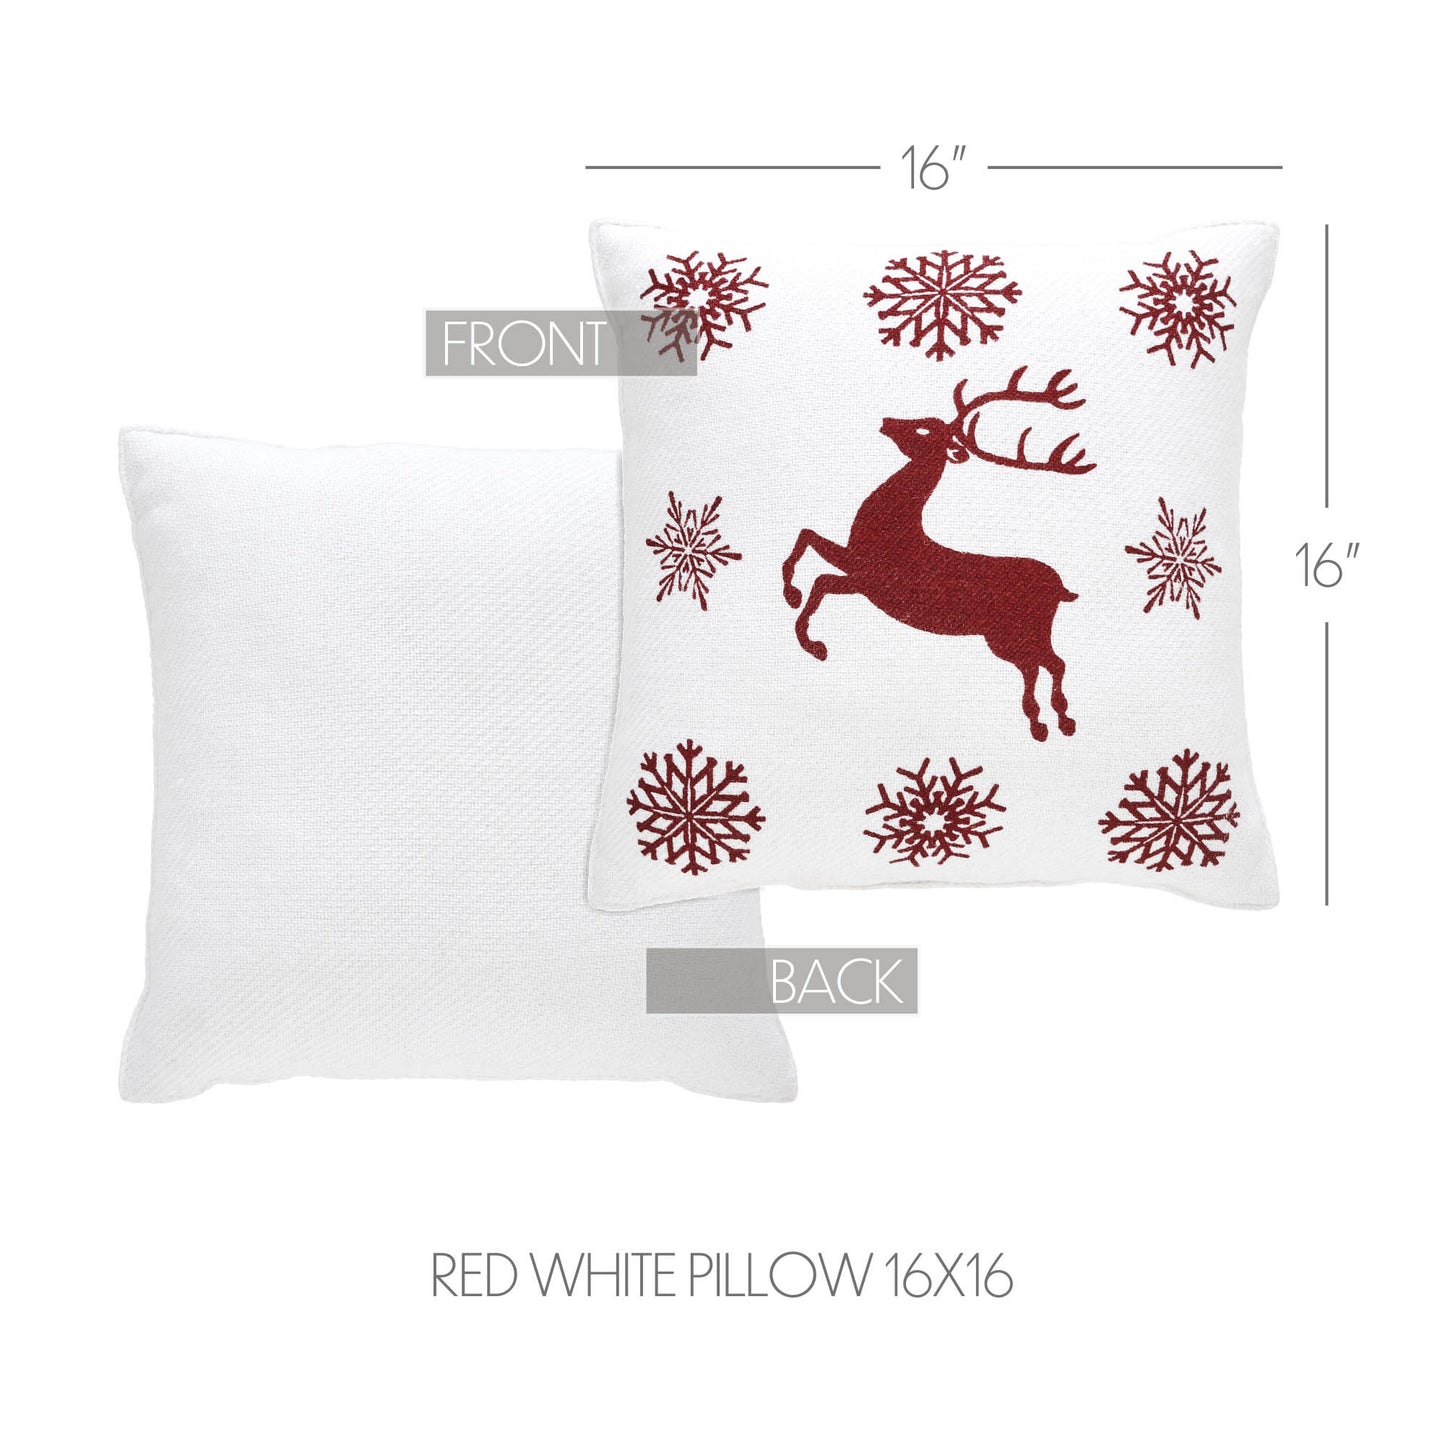 Scandia Snowflake Red White Pillow 16x16 SpadezStore